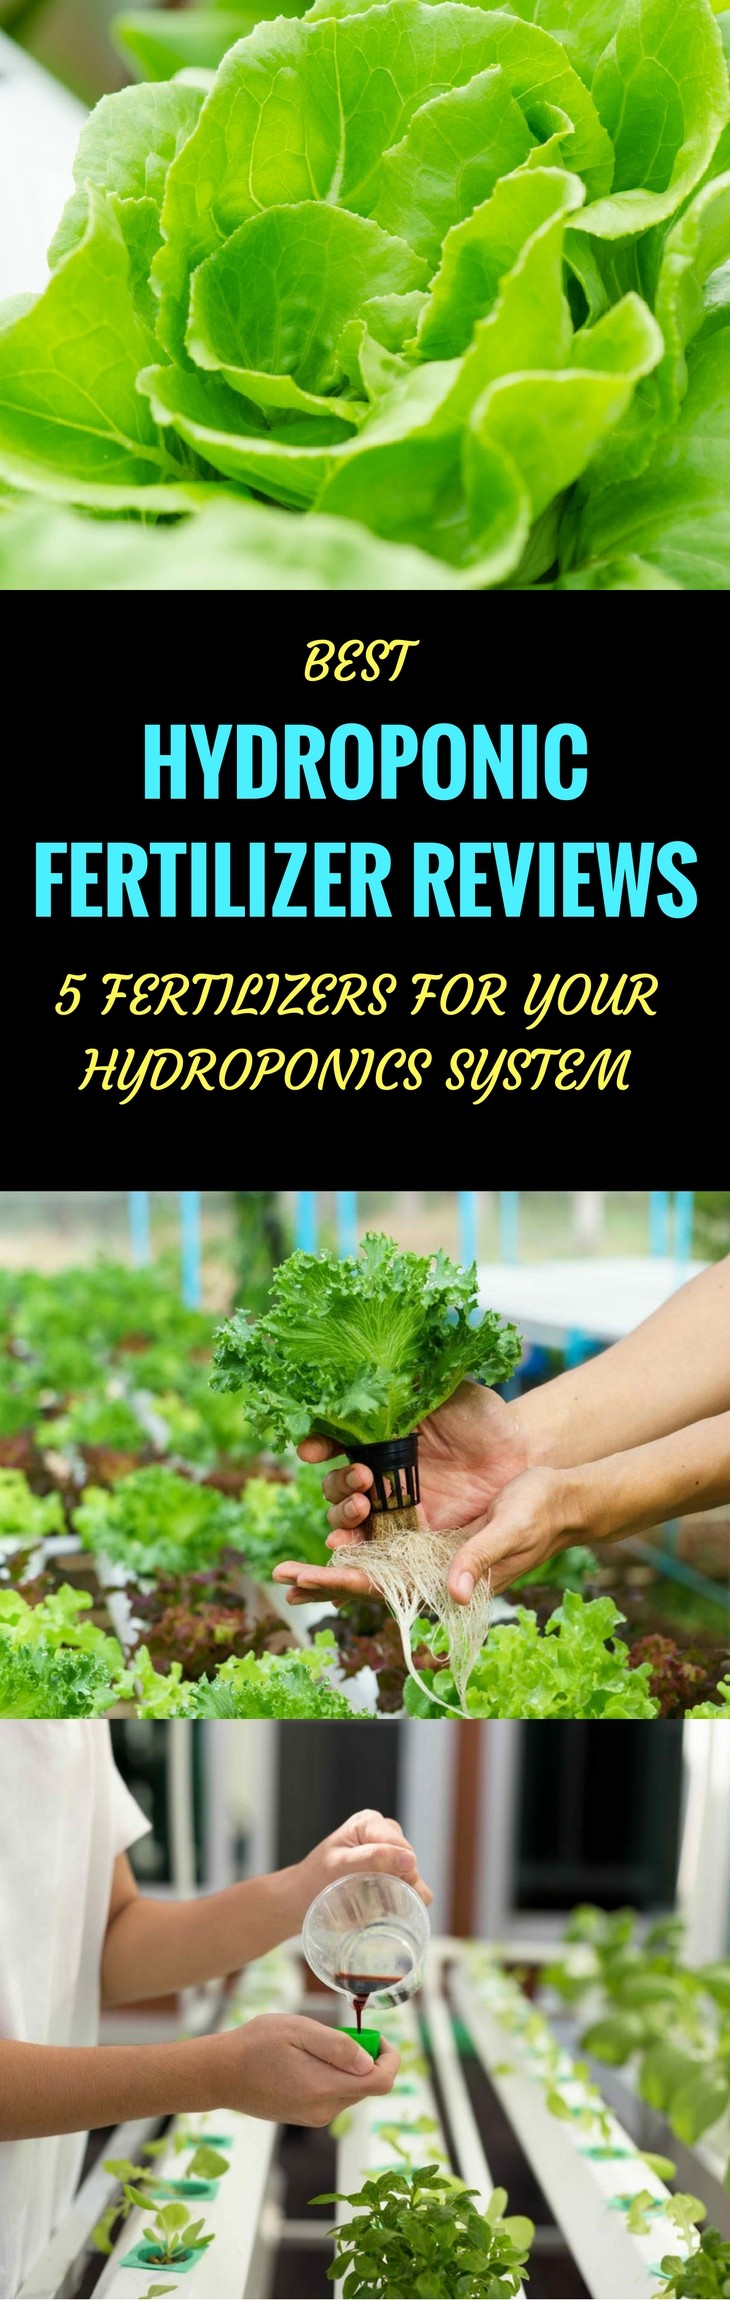 best hydroponic fertilizer pin it